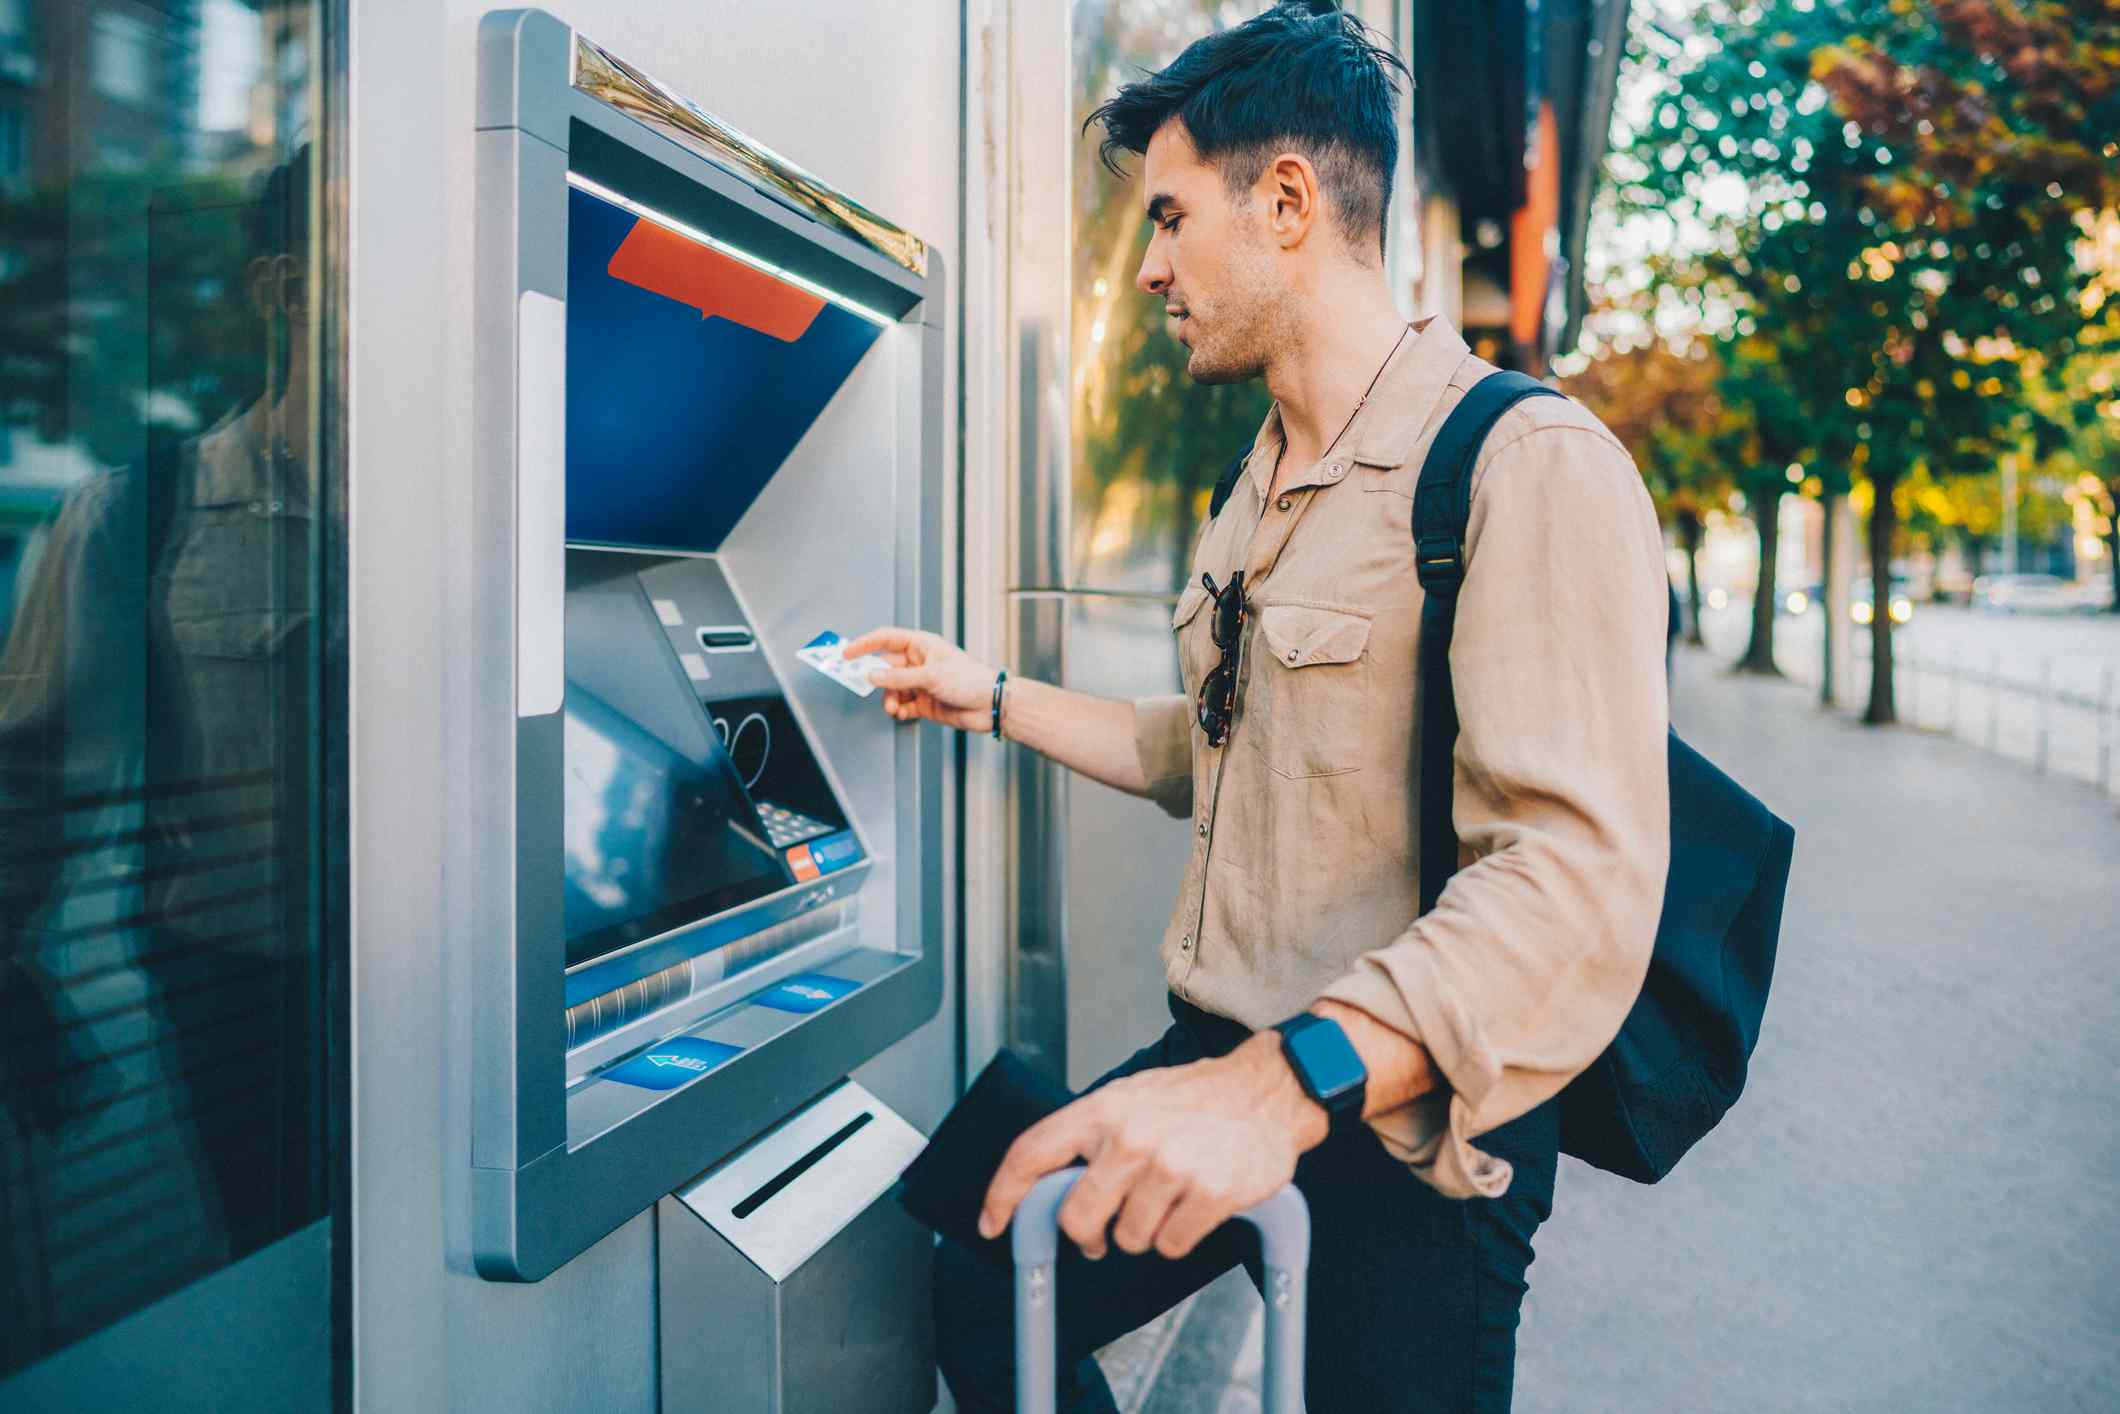 A man uses an ATM.